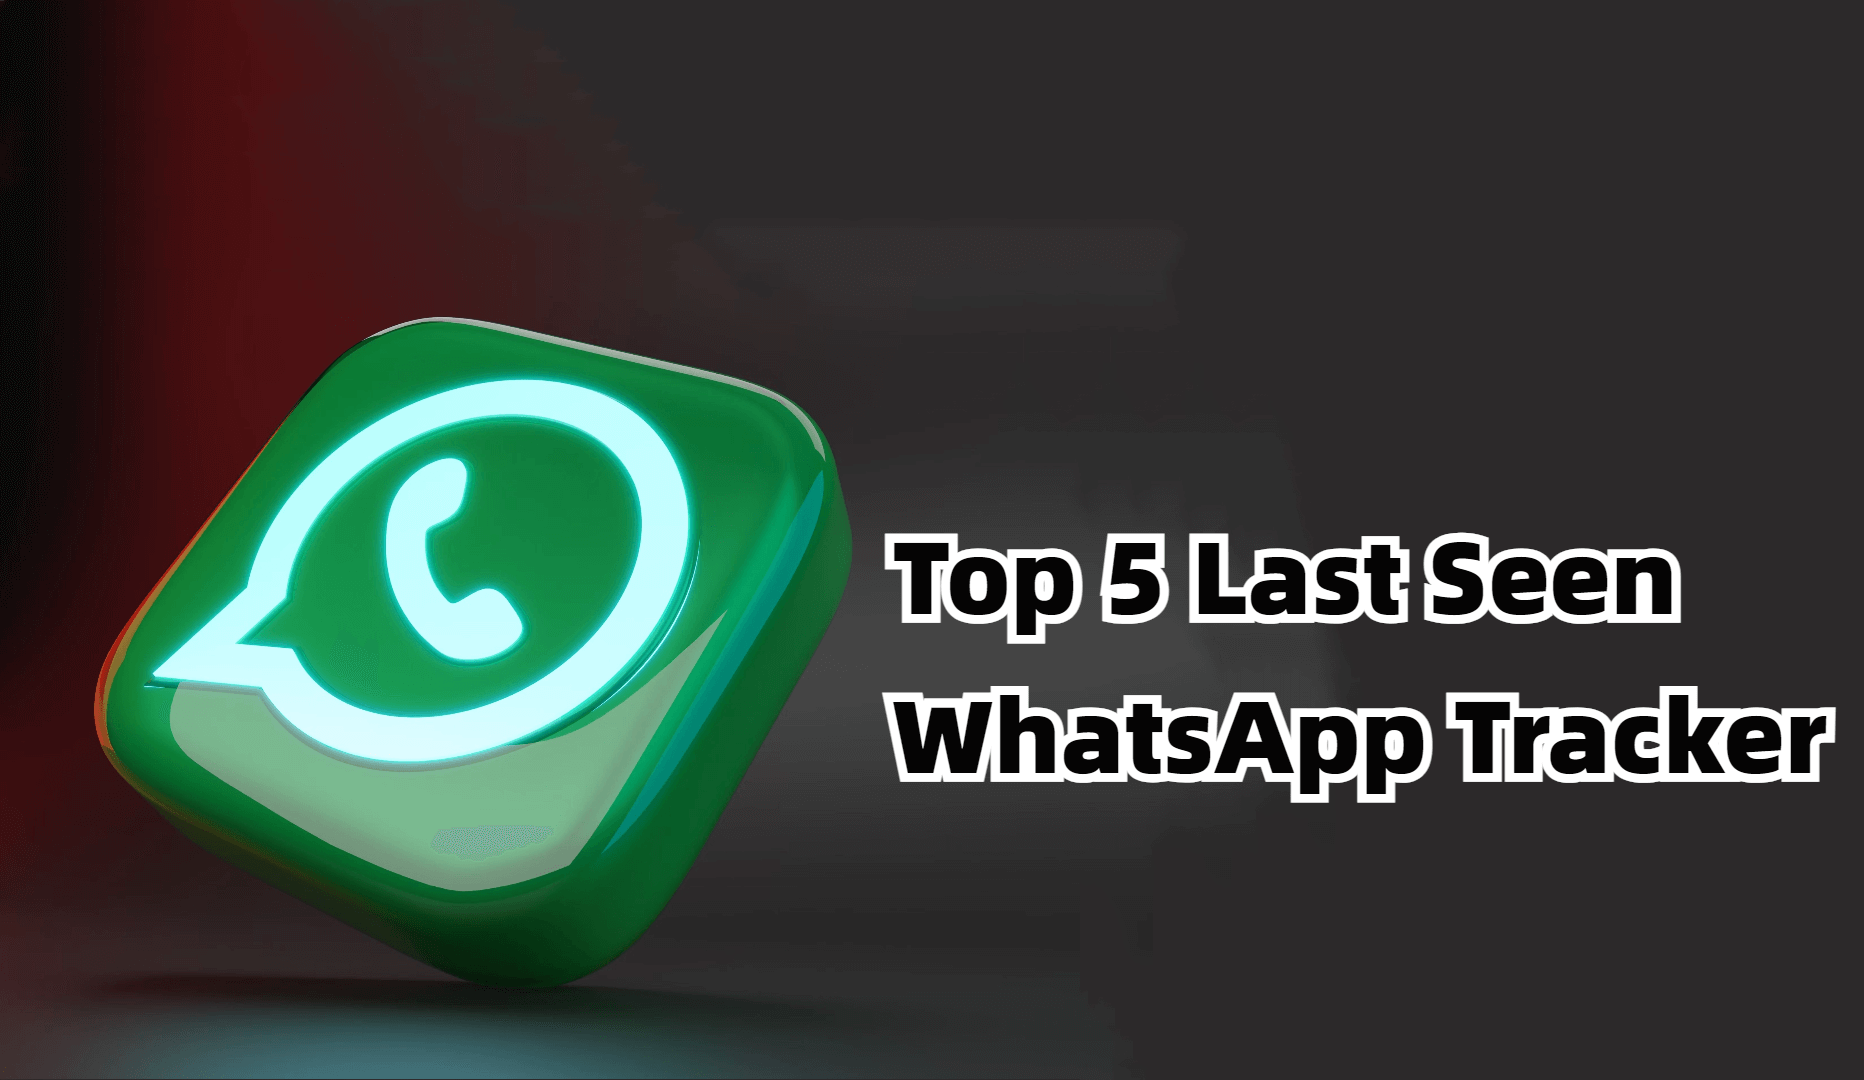 last seen whatsapp tracker